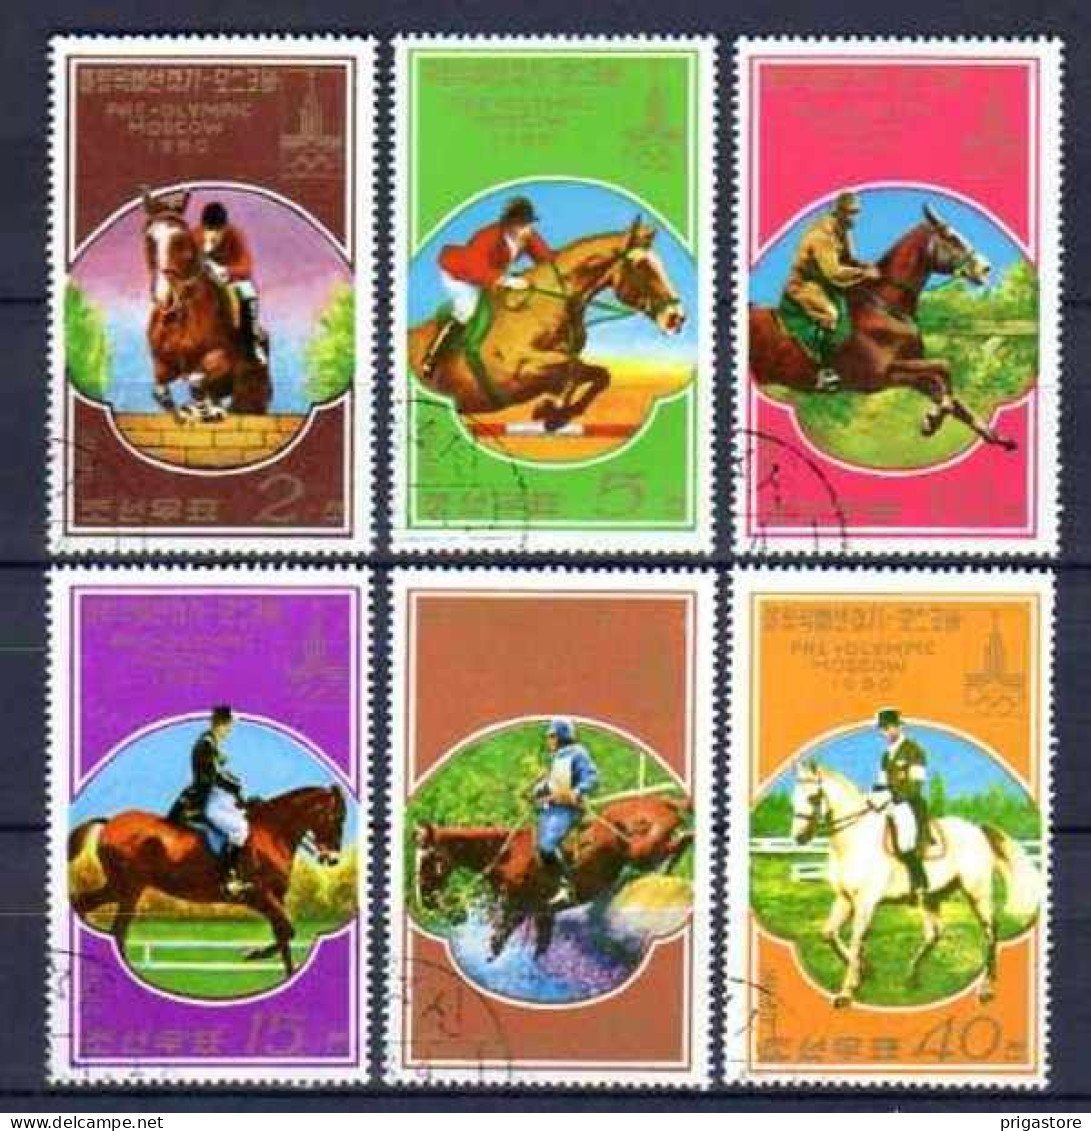 Chevaux Corée Du Nord 1980 (7) Yvert N° 1446 A à 1446 F Oblitérés Used - Paarden